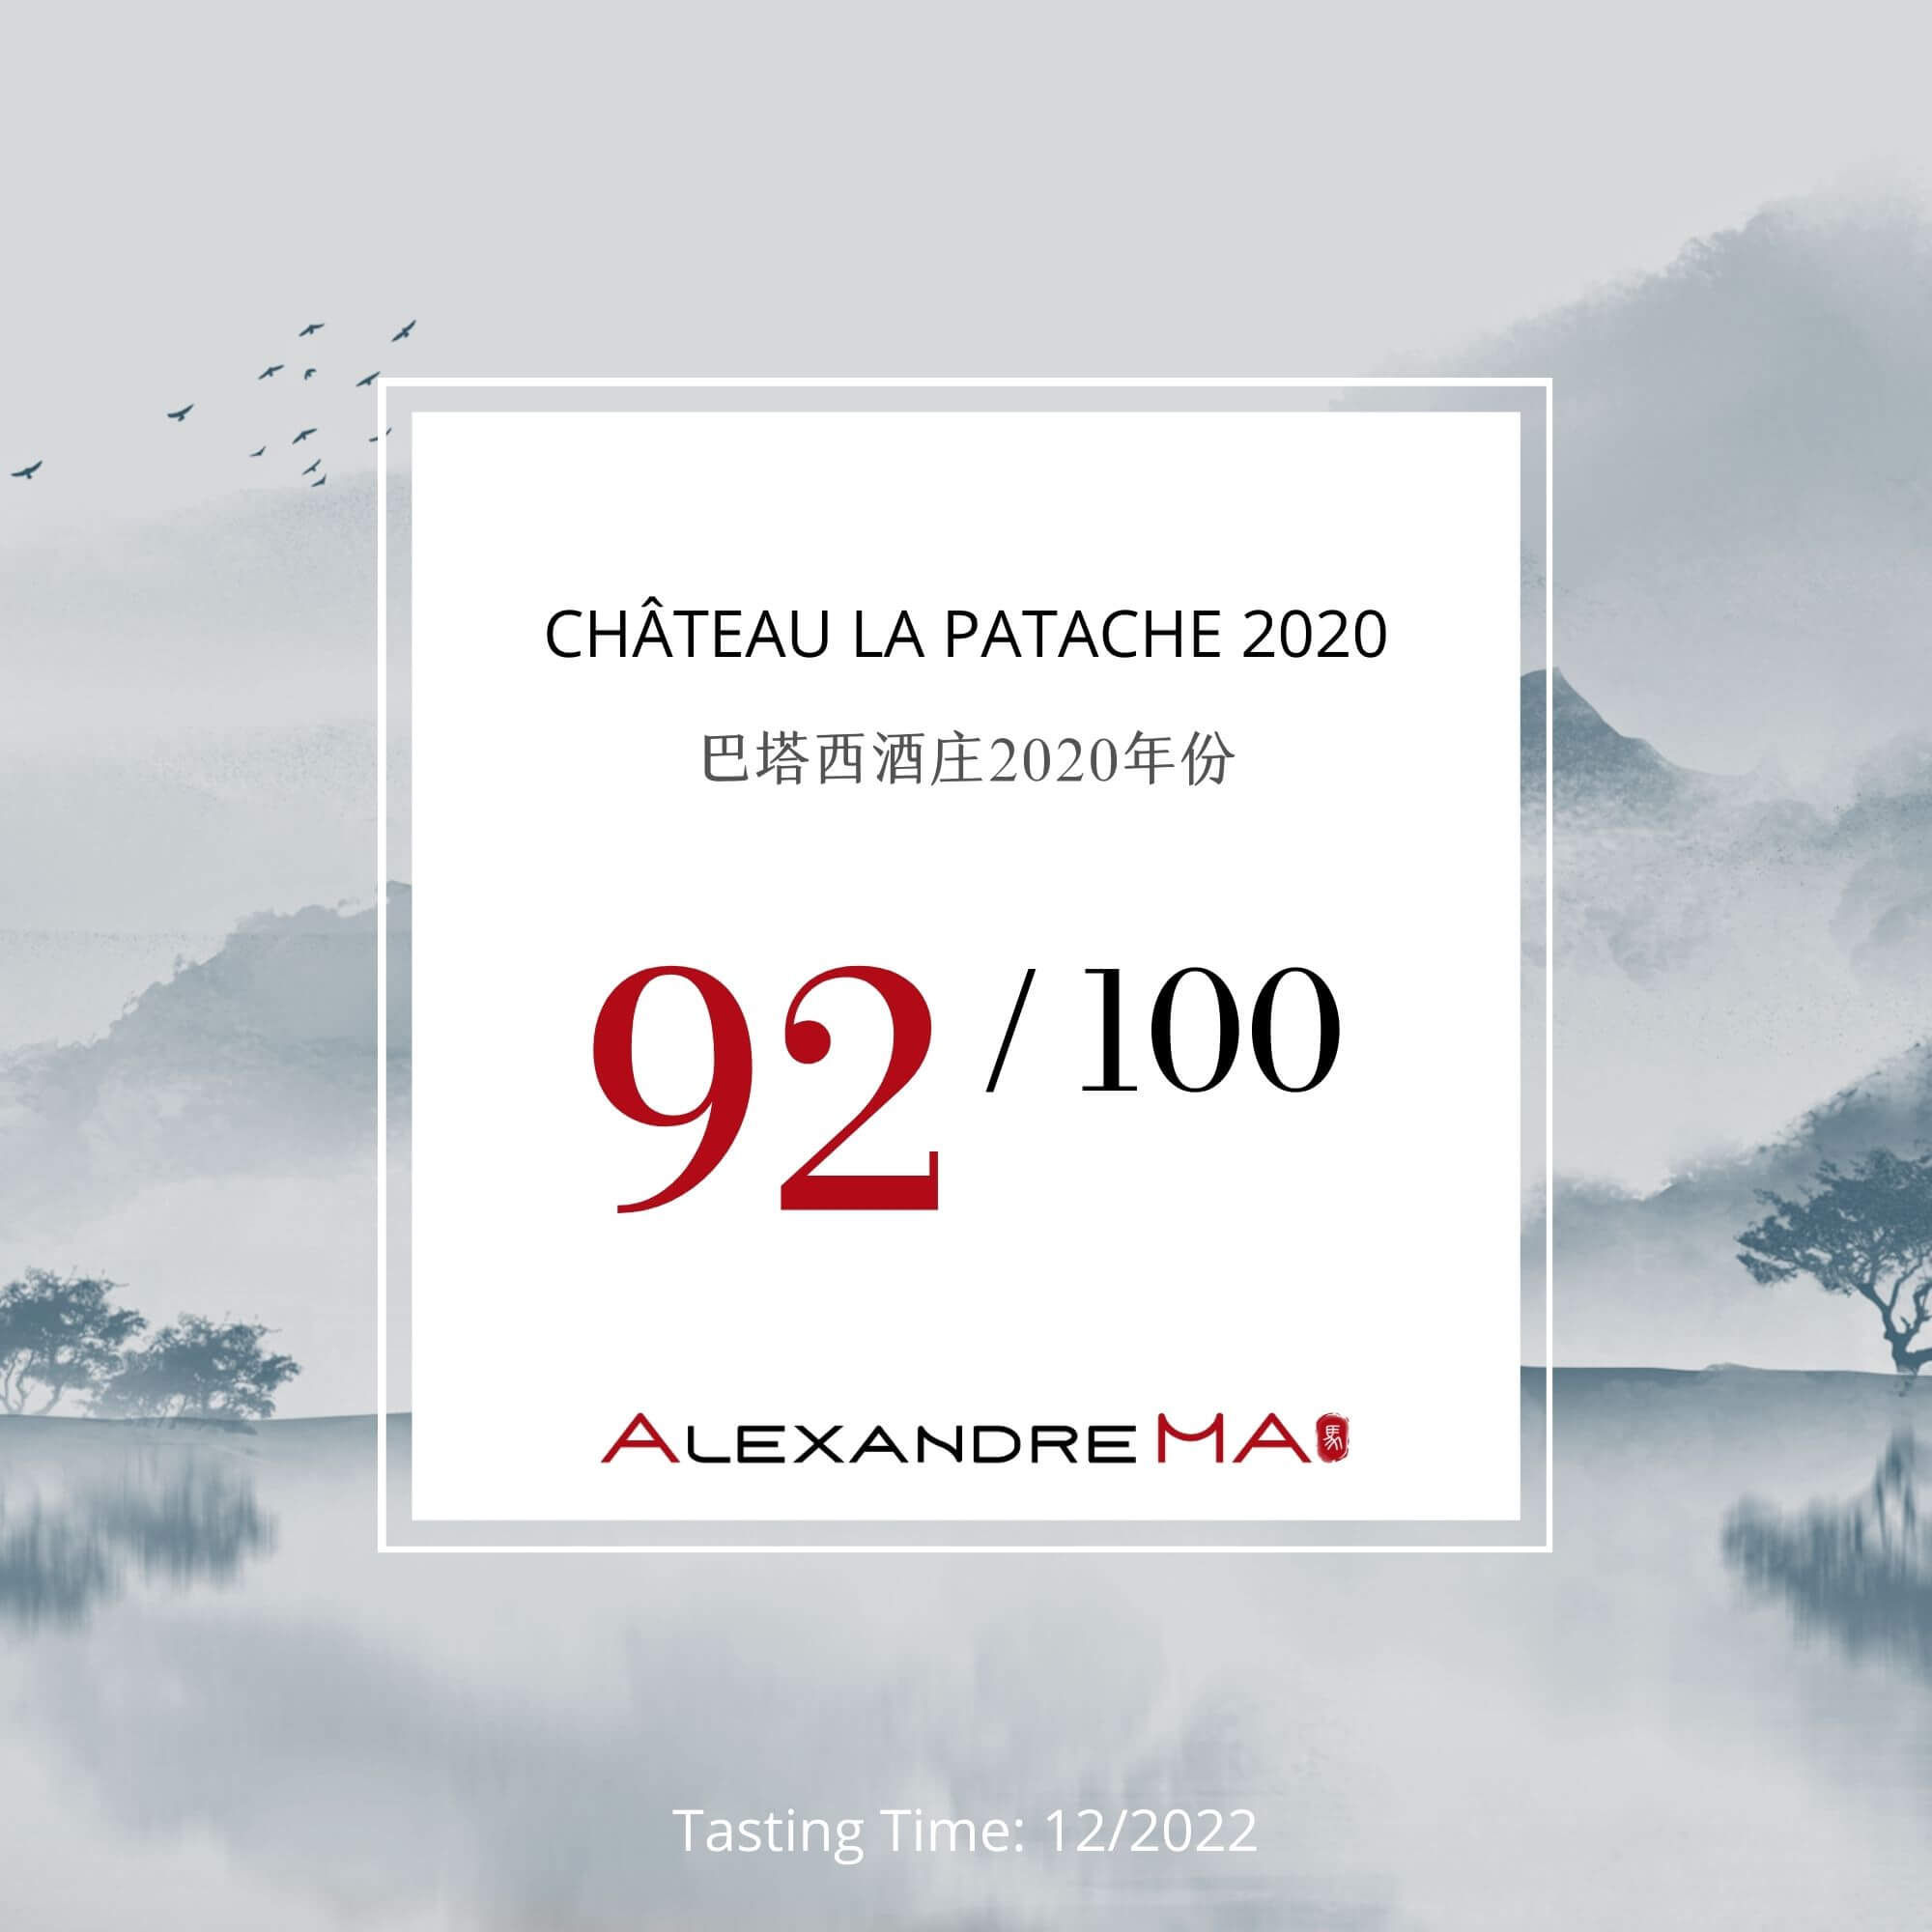 Château La Patache 2020 - Alexandre MA